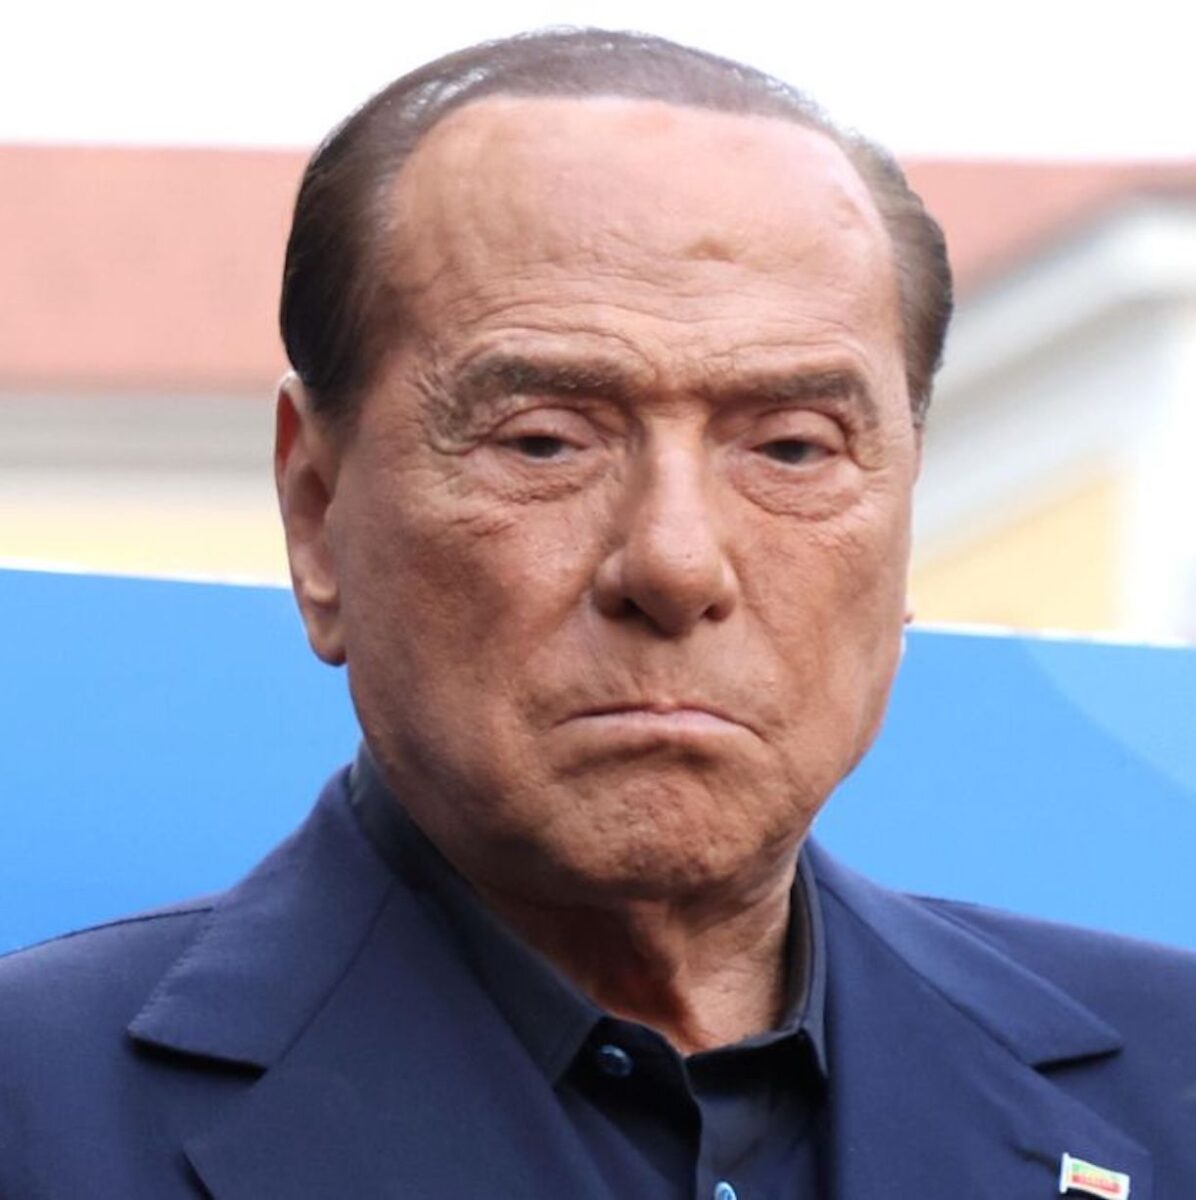 “Non lo può più fare”. Choc su Silvio Berlusconi